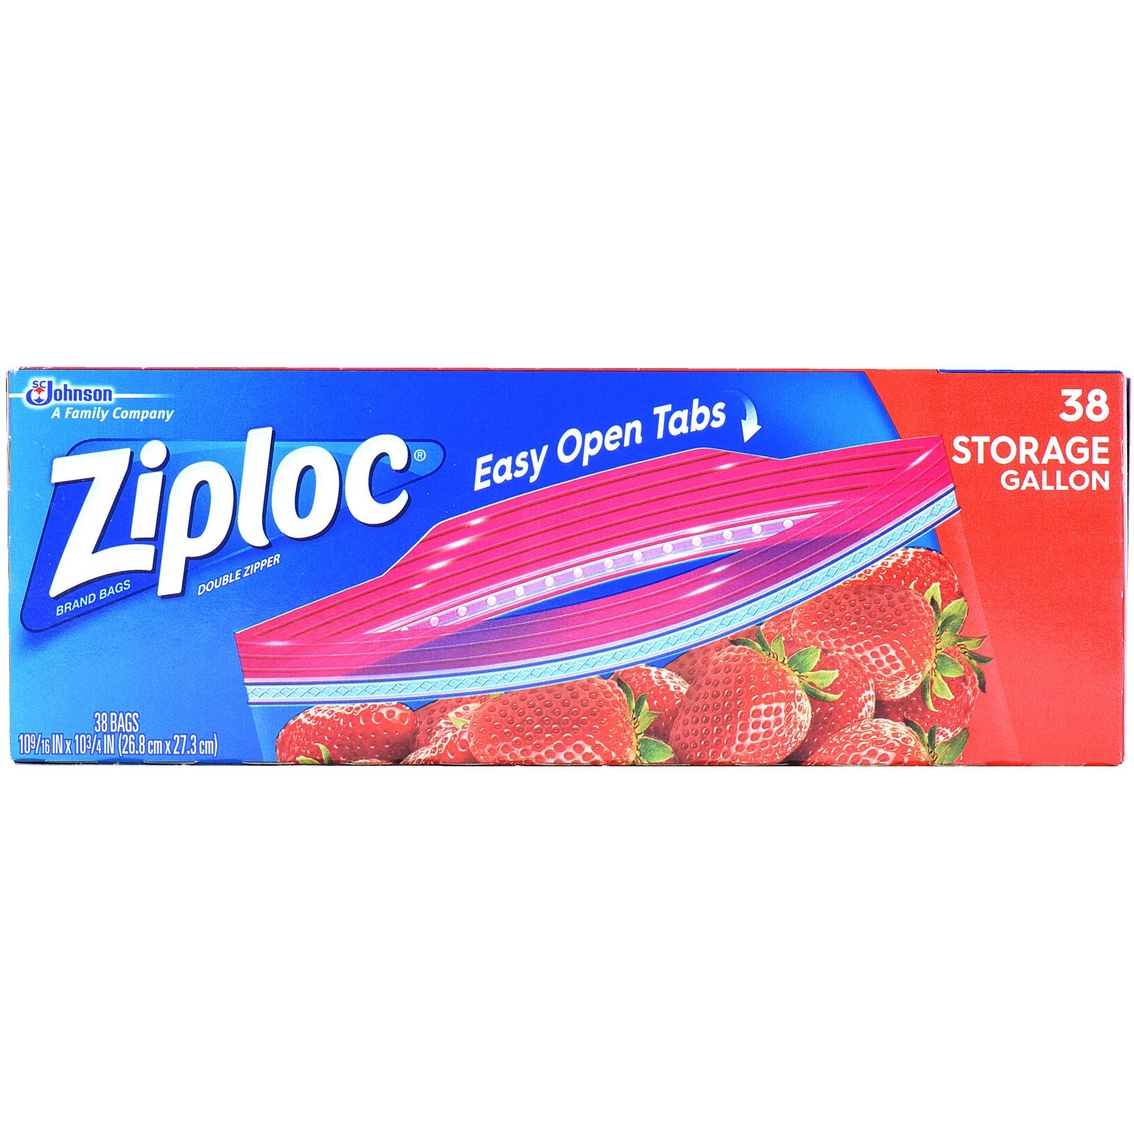 Ziploc Freezer Bag Gallon Mega Pack - 2 pack, 60 bags each